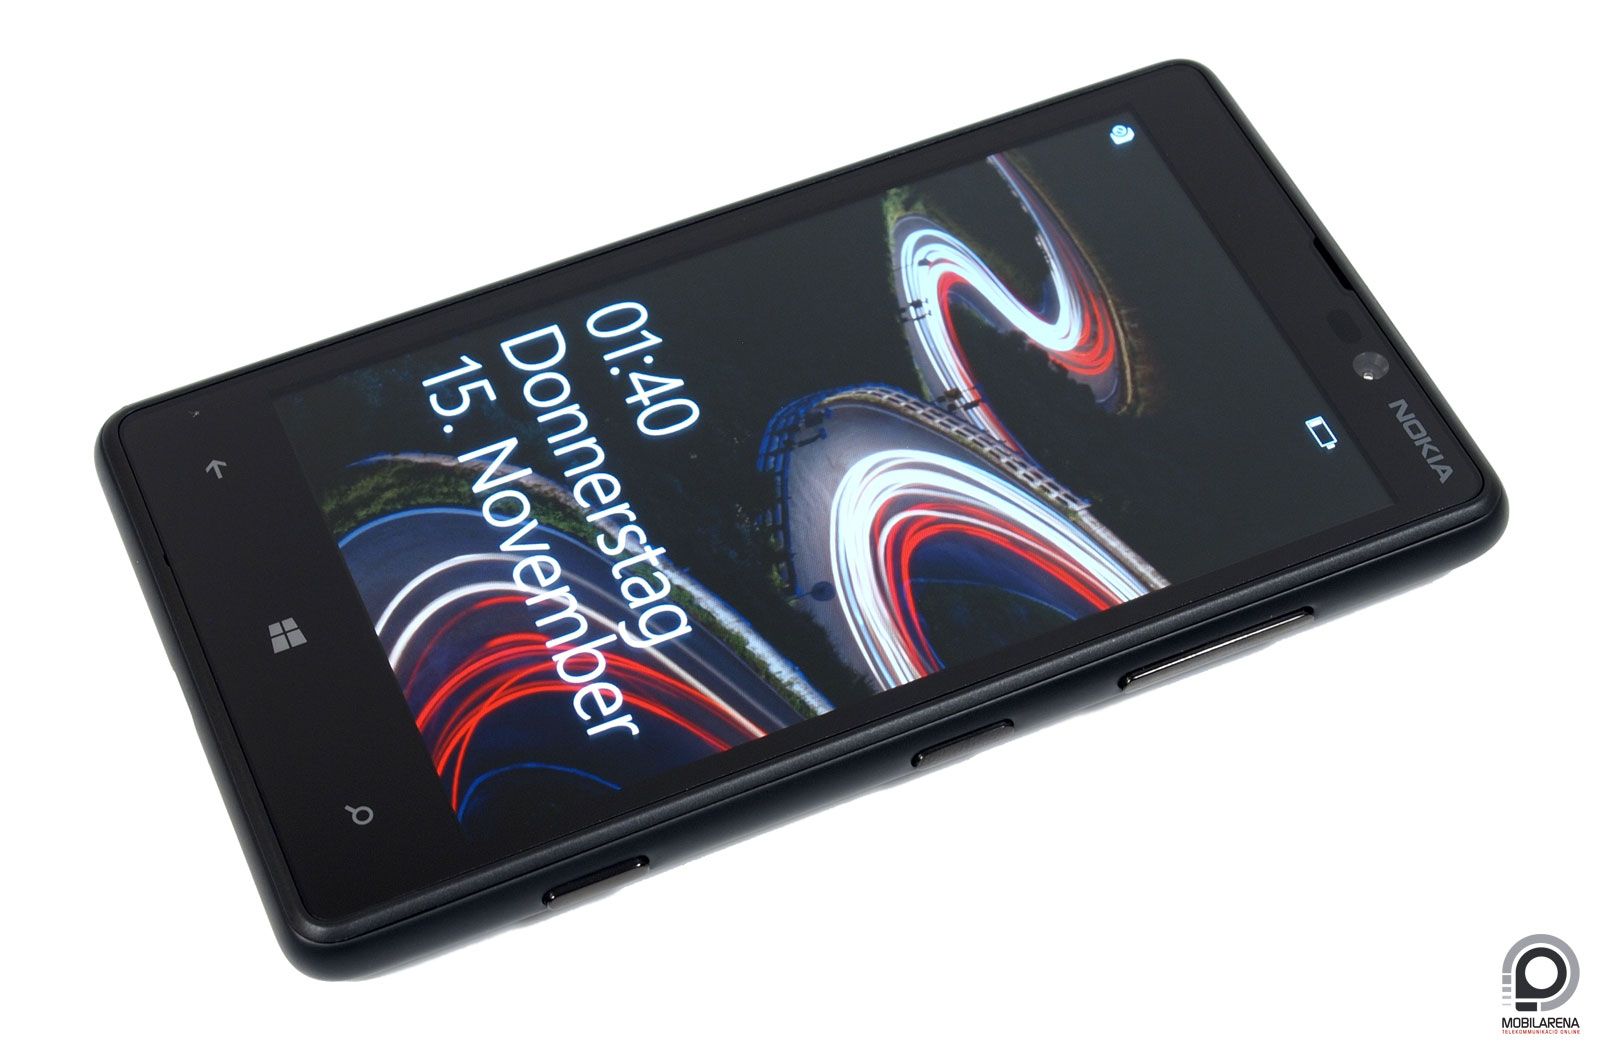 Nokia Lumia 820 - tesó a mindennapokhoz - Mobilarena Okostelefon teszt